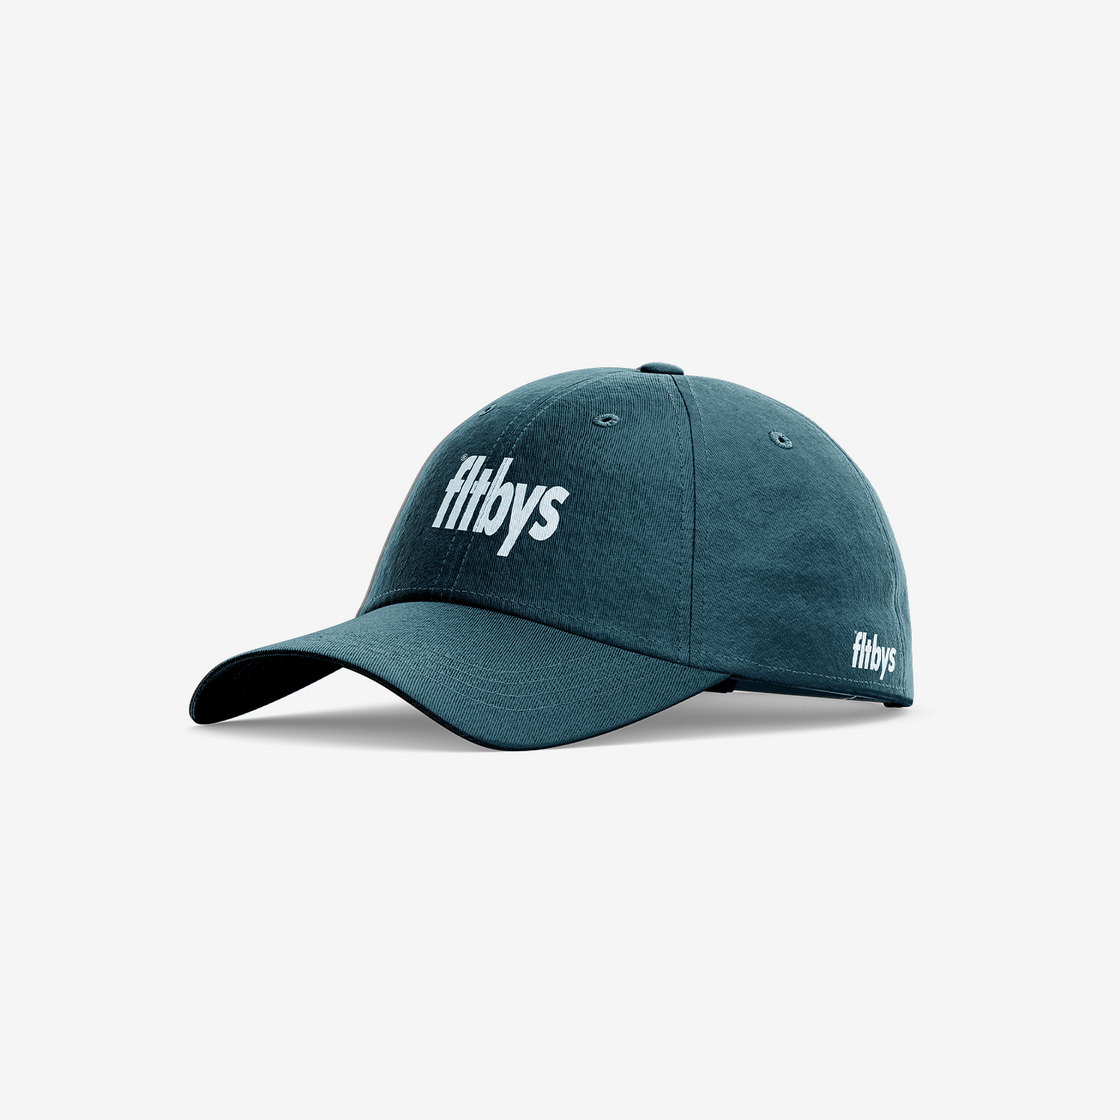 FLTBYS Classic Hat - Aqua